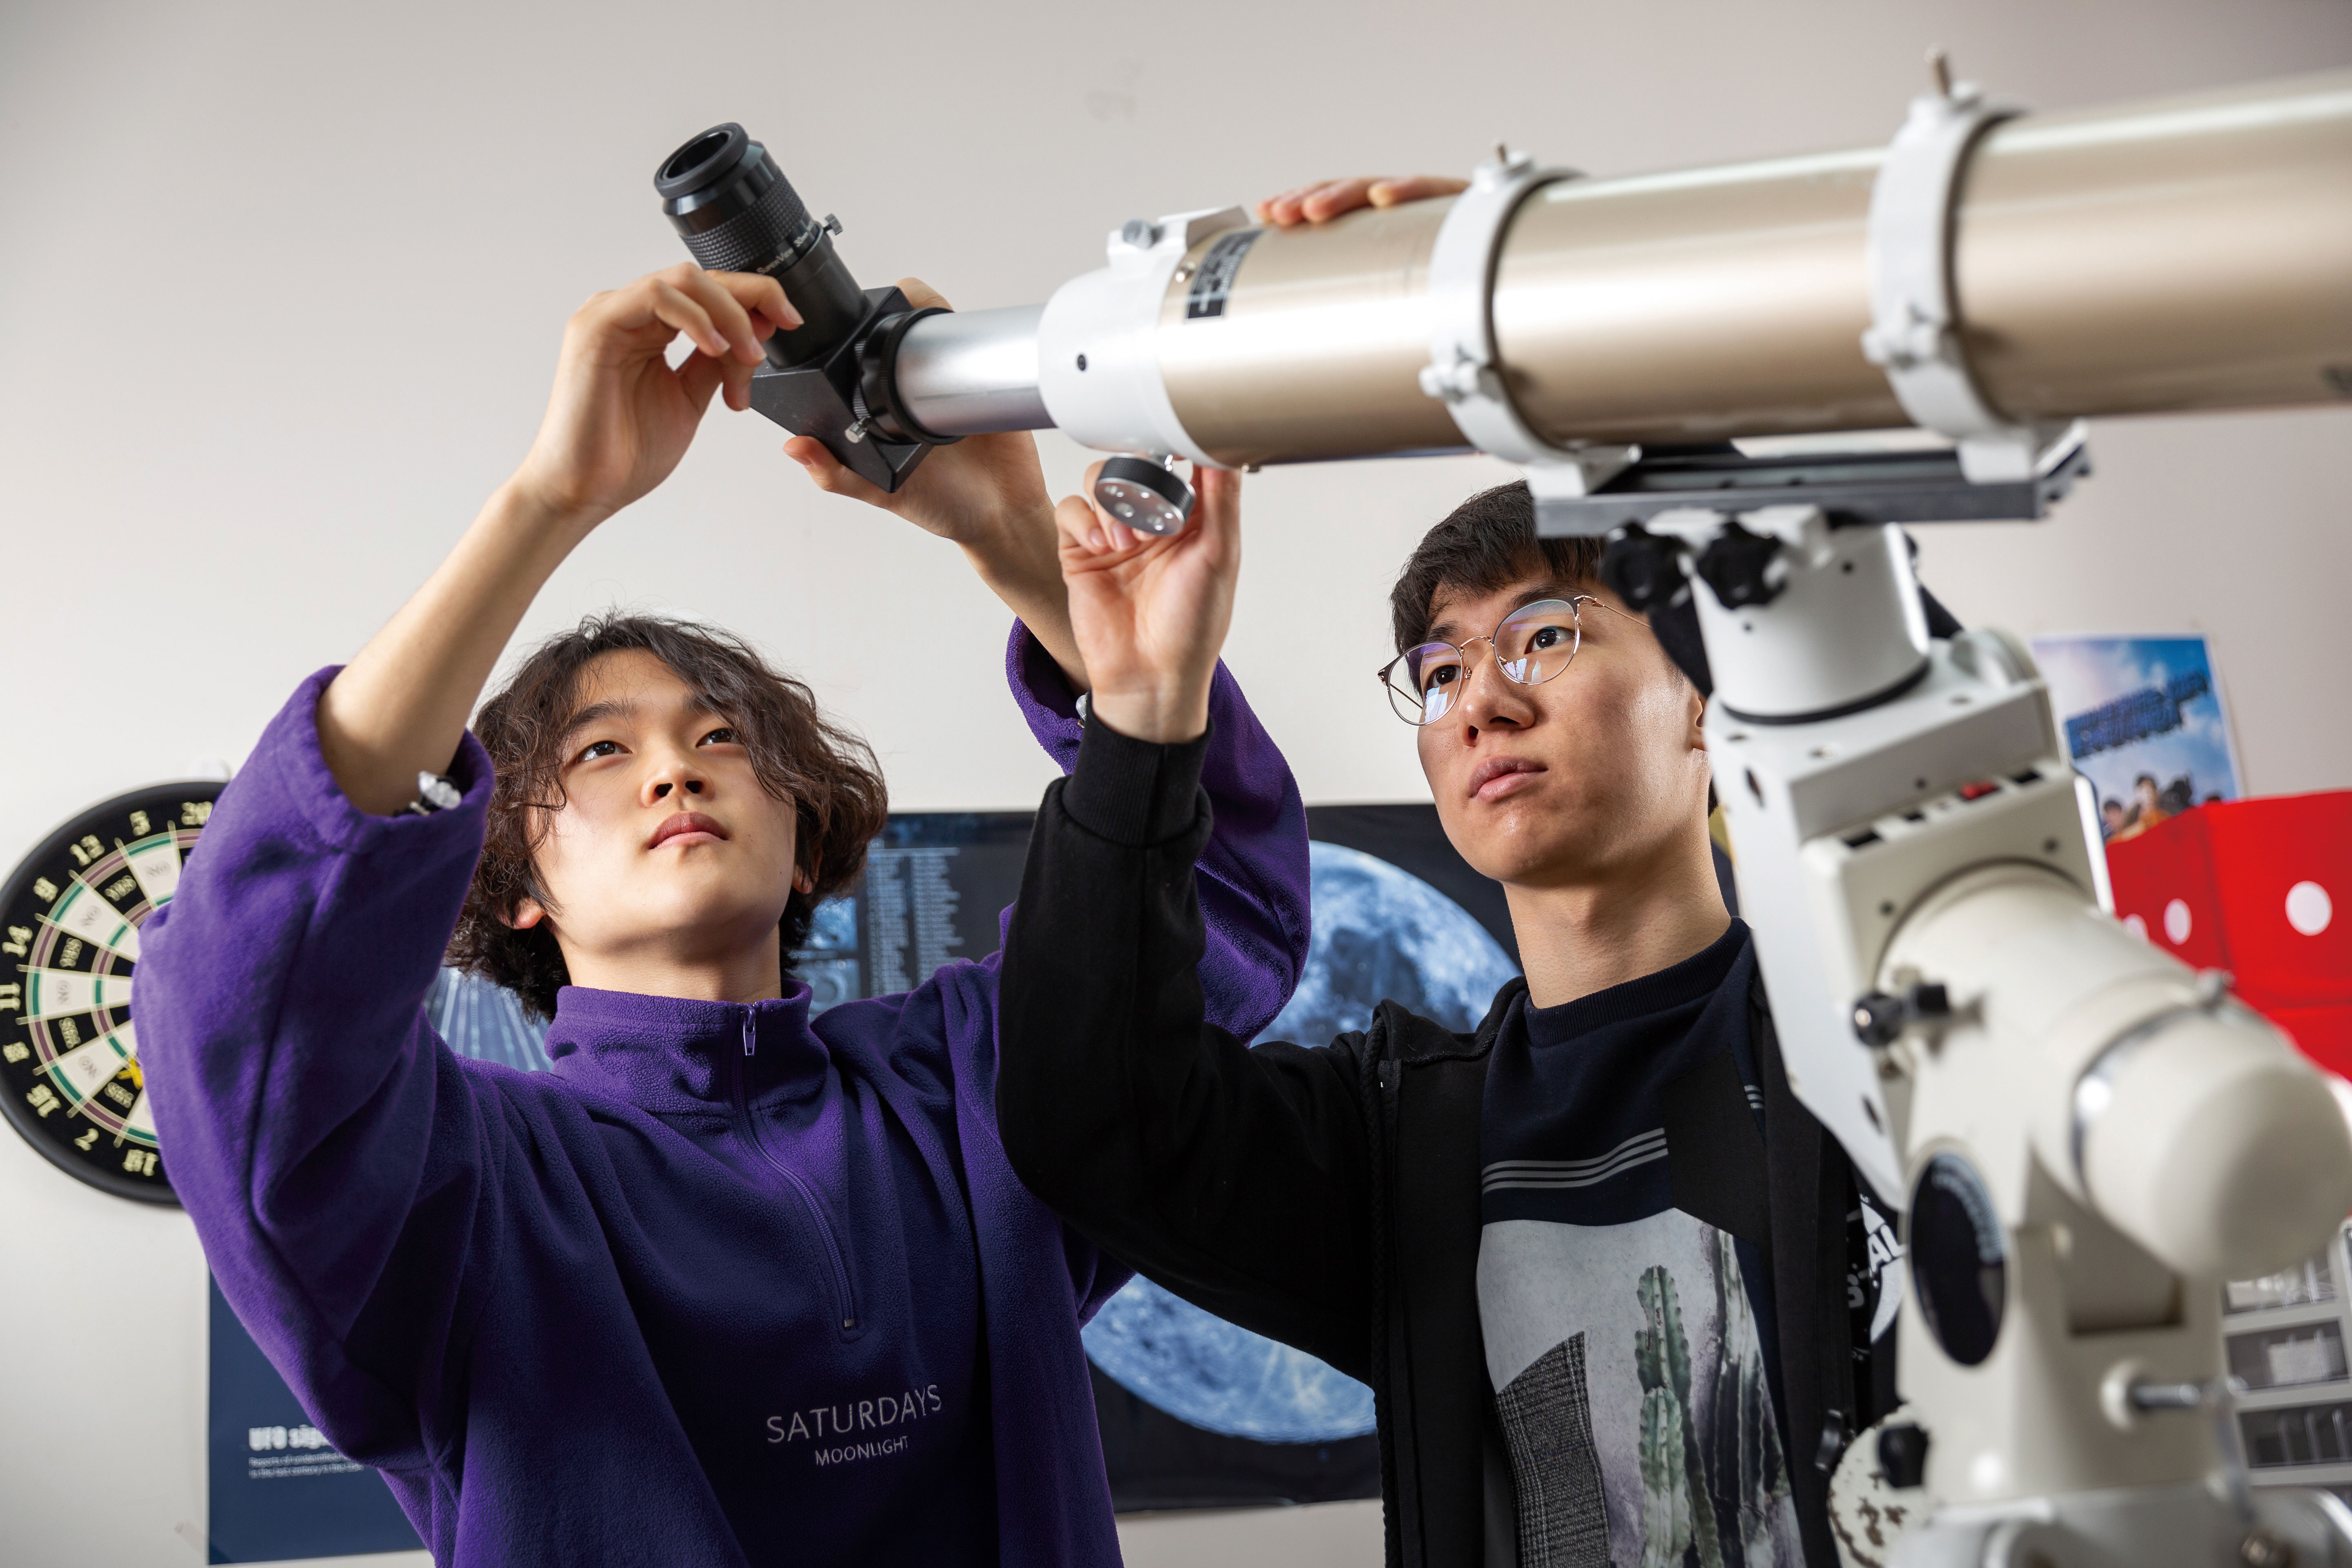 천체관측 장비를 살펴보고 있는 학생들 | 사진: 안홍범